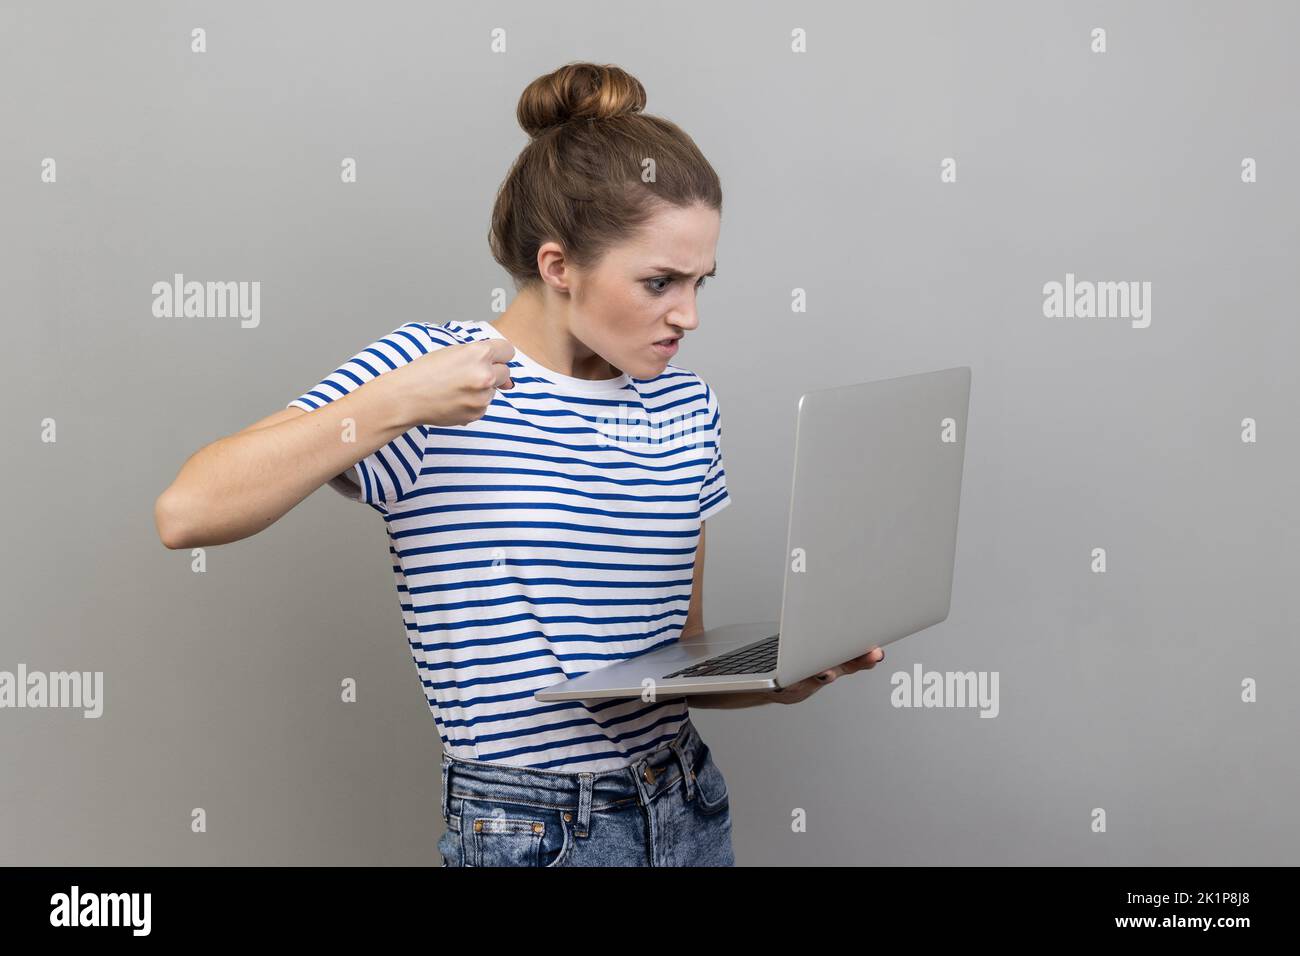 Porträt einer aggressiven unglücklichen Frau in gestreiften T-Shirt mit schlechter Laune sind bereit, einen Arbeiter durch eine Webcam mit erhobener Faust mit wütendem Gesicht schlagen. Innenaufnahme des Studios isoliert auf grauem Hintergrund. Stockfoto